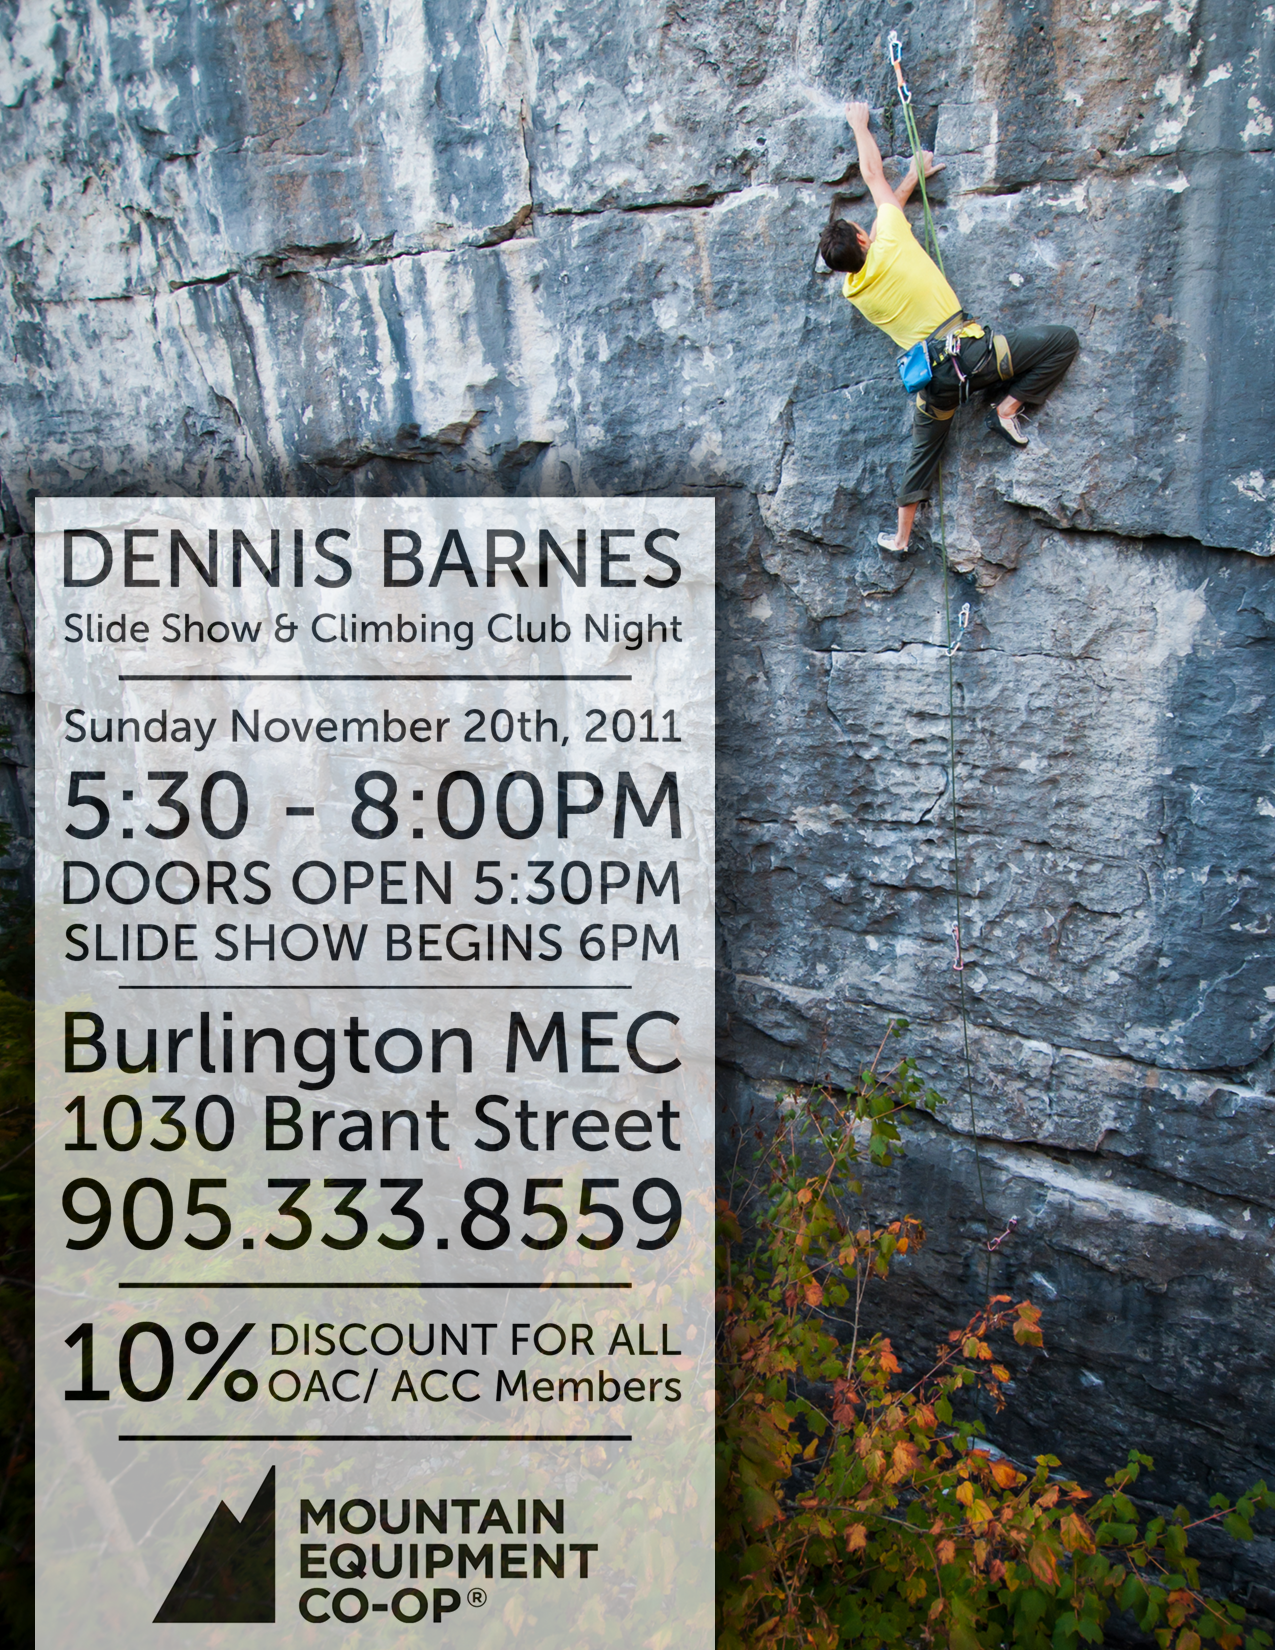 10% off at MEC Burlington on Nov 20th + Dennis Barnes slide show!